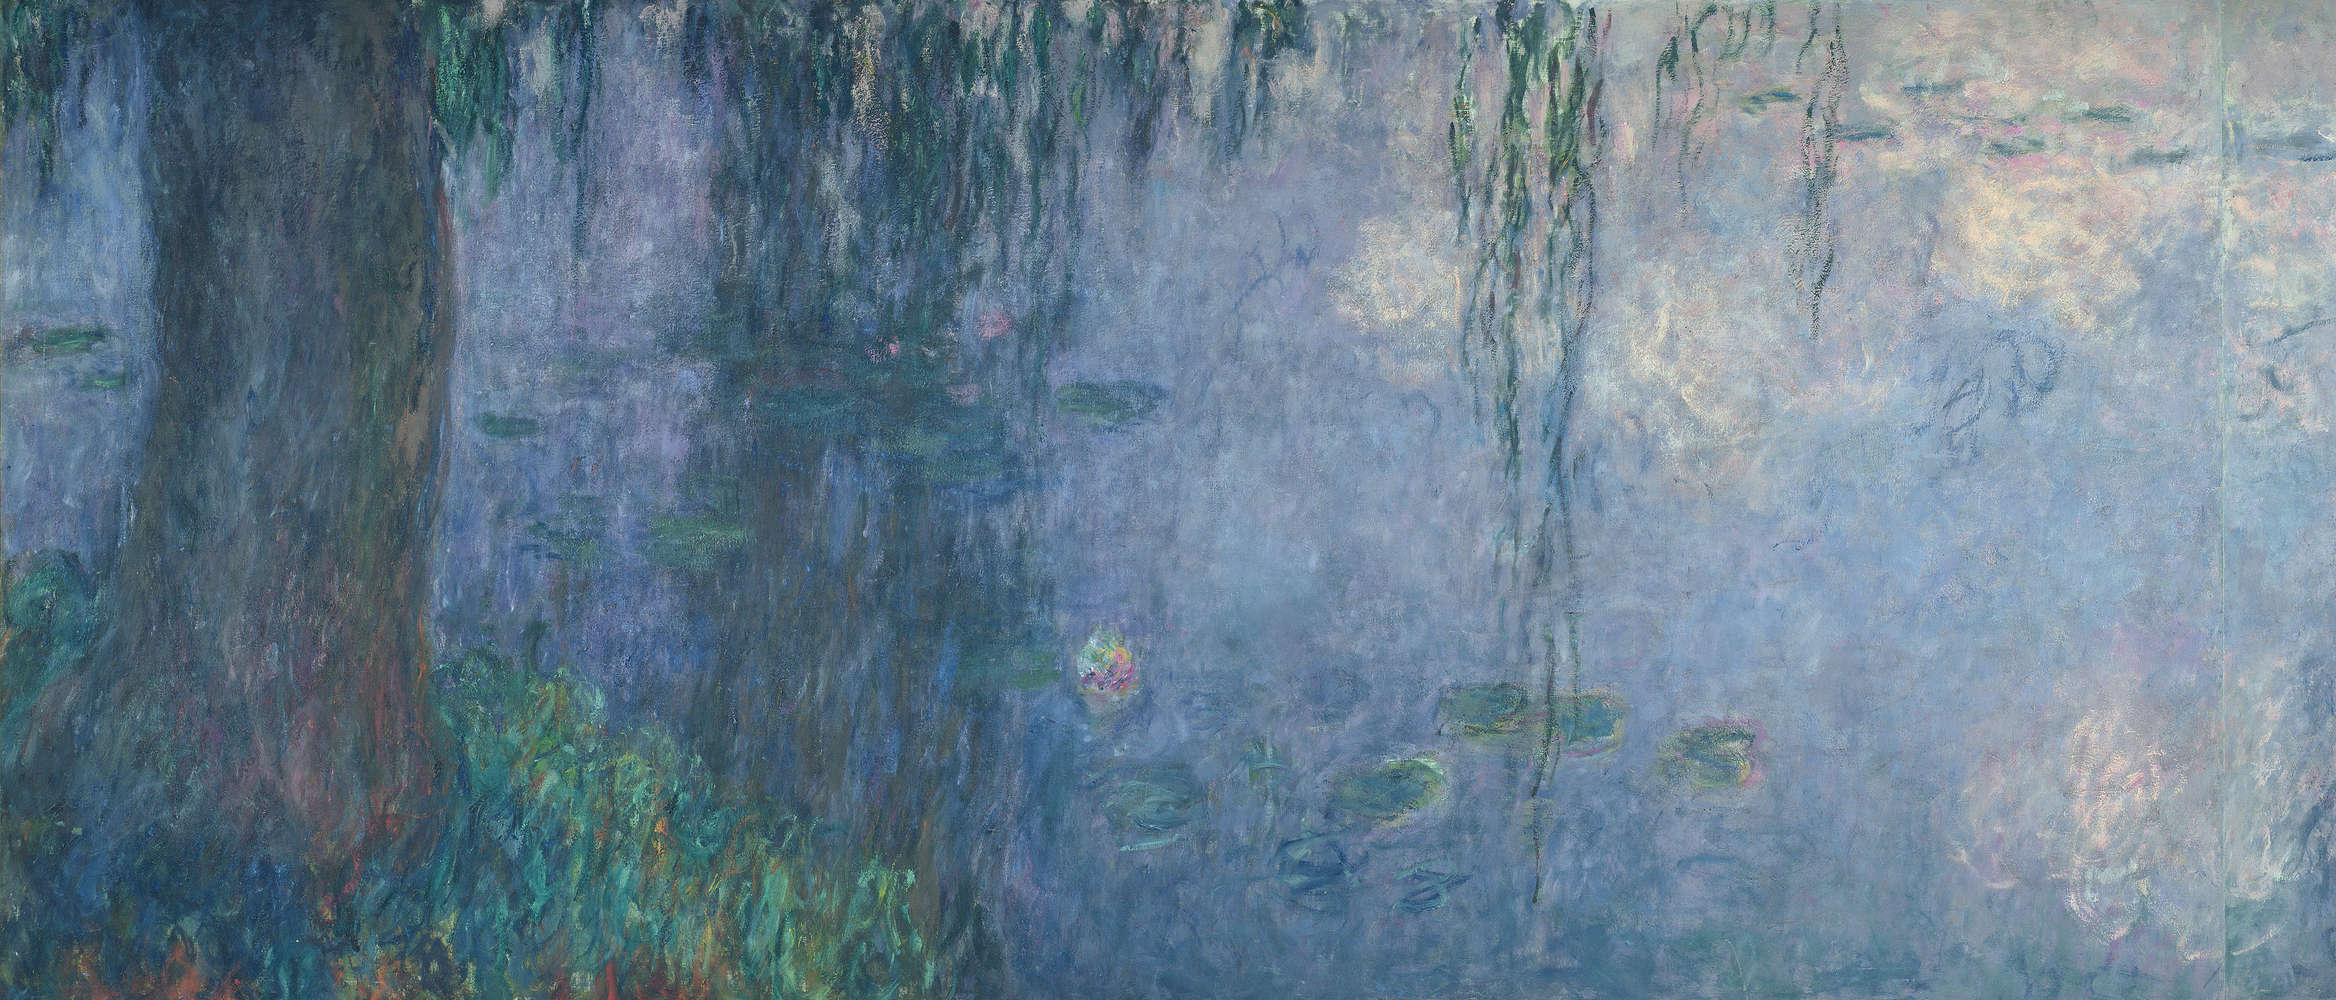             Fototapete "Seerosen: Morgen mit Trauerweiden" Detail von Claude Monet
        